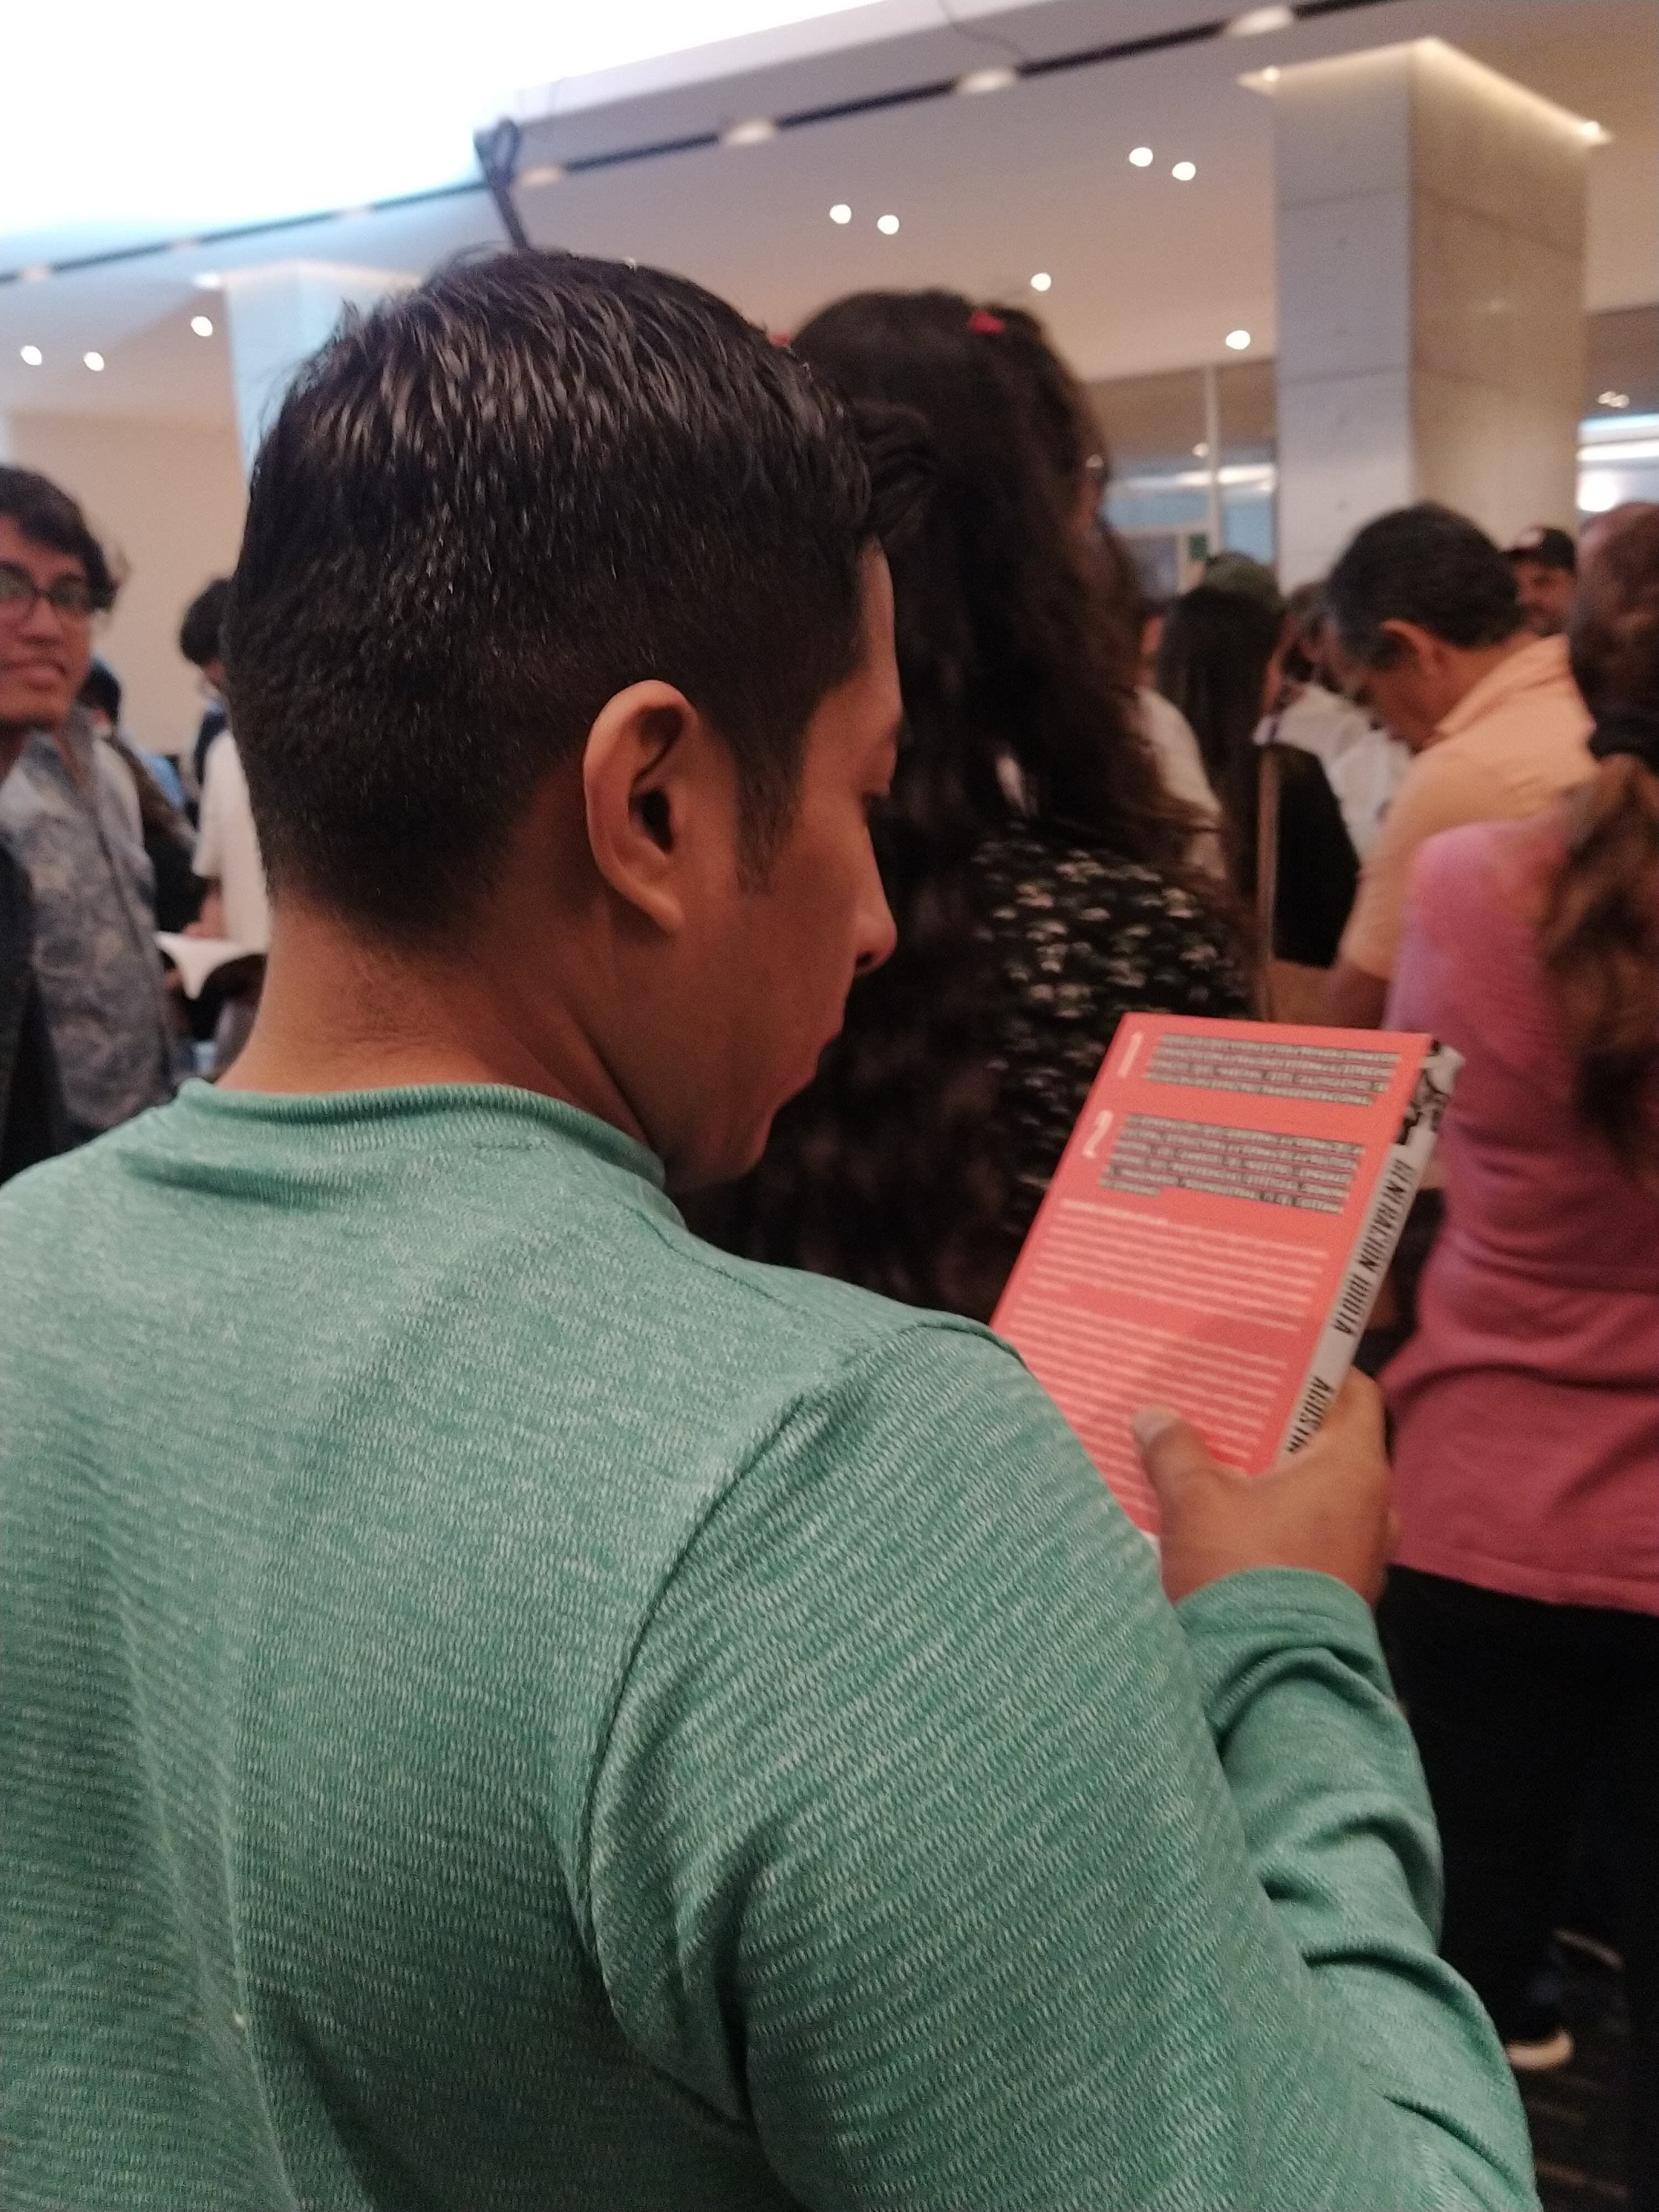 Cientos de personas hicieron fila para recibir la firma del autor de 'Generación idiota', la noche del domingo 24 de septiembre, en la Feria del Libro de Guayaquil.